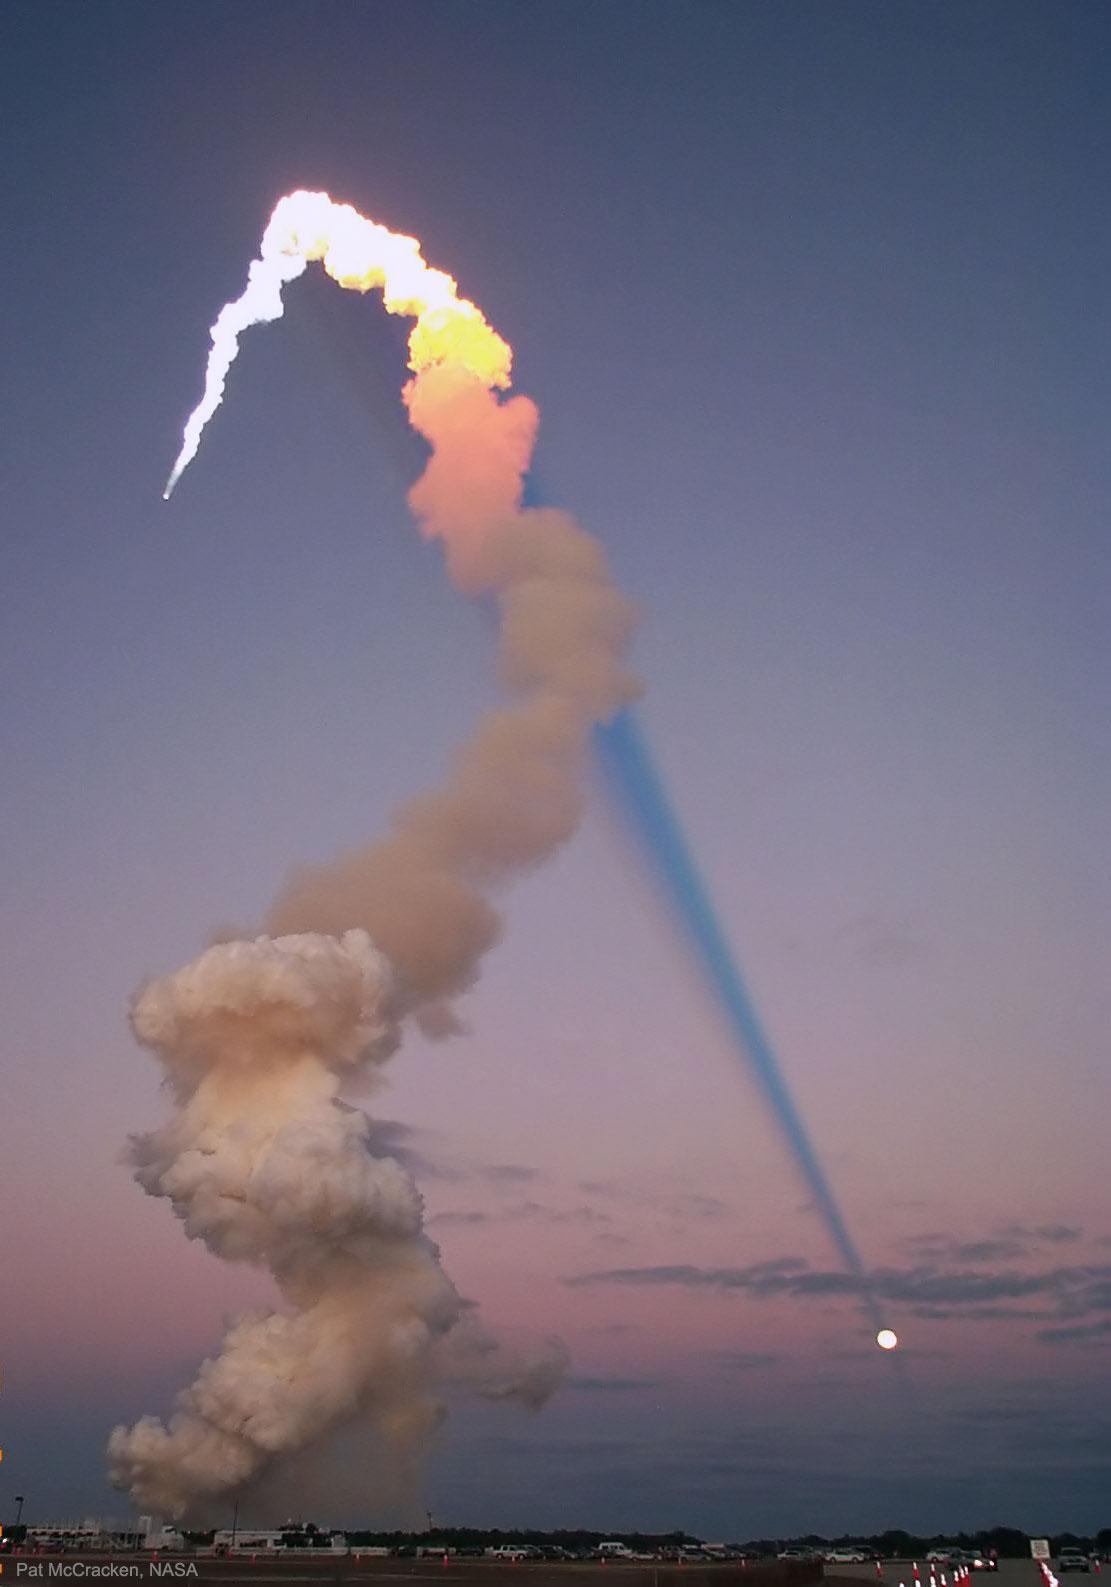 يُرى عمود الدخان الطويل لصاروخٍ مُطلَق على الجانب الأيسر للصورة. يكون الجزء الأعلى من عمود الدخان ساطعاً، بينما الجزء الأسفل بُنّيٌّ دخانيّ. الجزء الساطع من عمود الدخان مُنارٌ بواسطة الشمس ويُلقي ممرّ ظلٍّ طويلاً ومُظلِماً عبر الصورة. يبدو الظلّ أنه ينتهي على القمر المُكتَمِل.